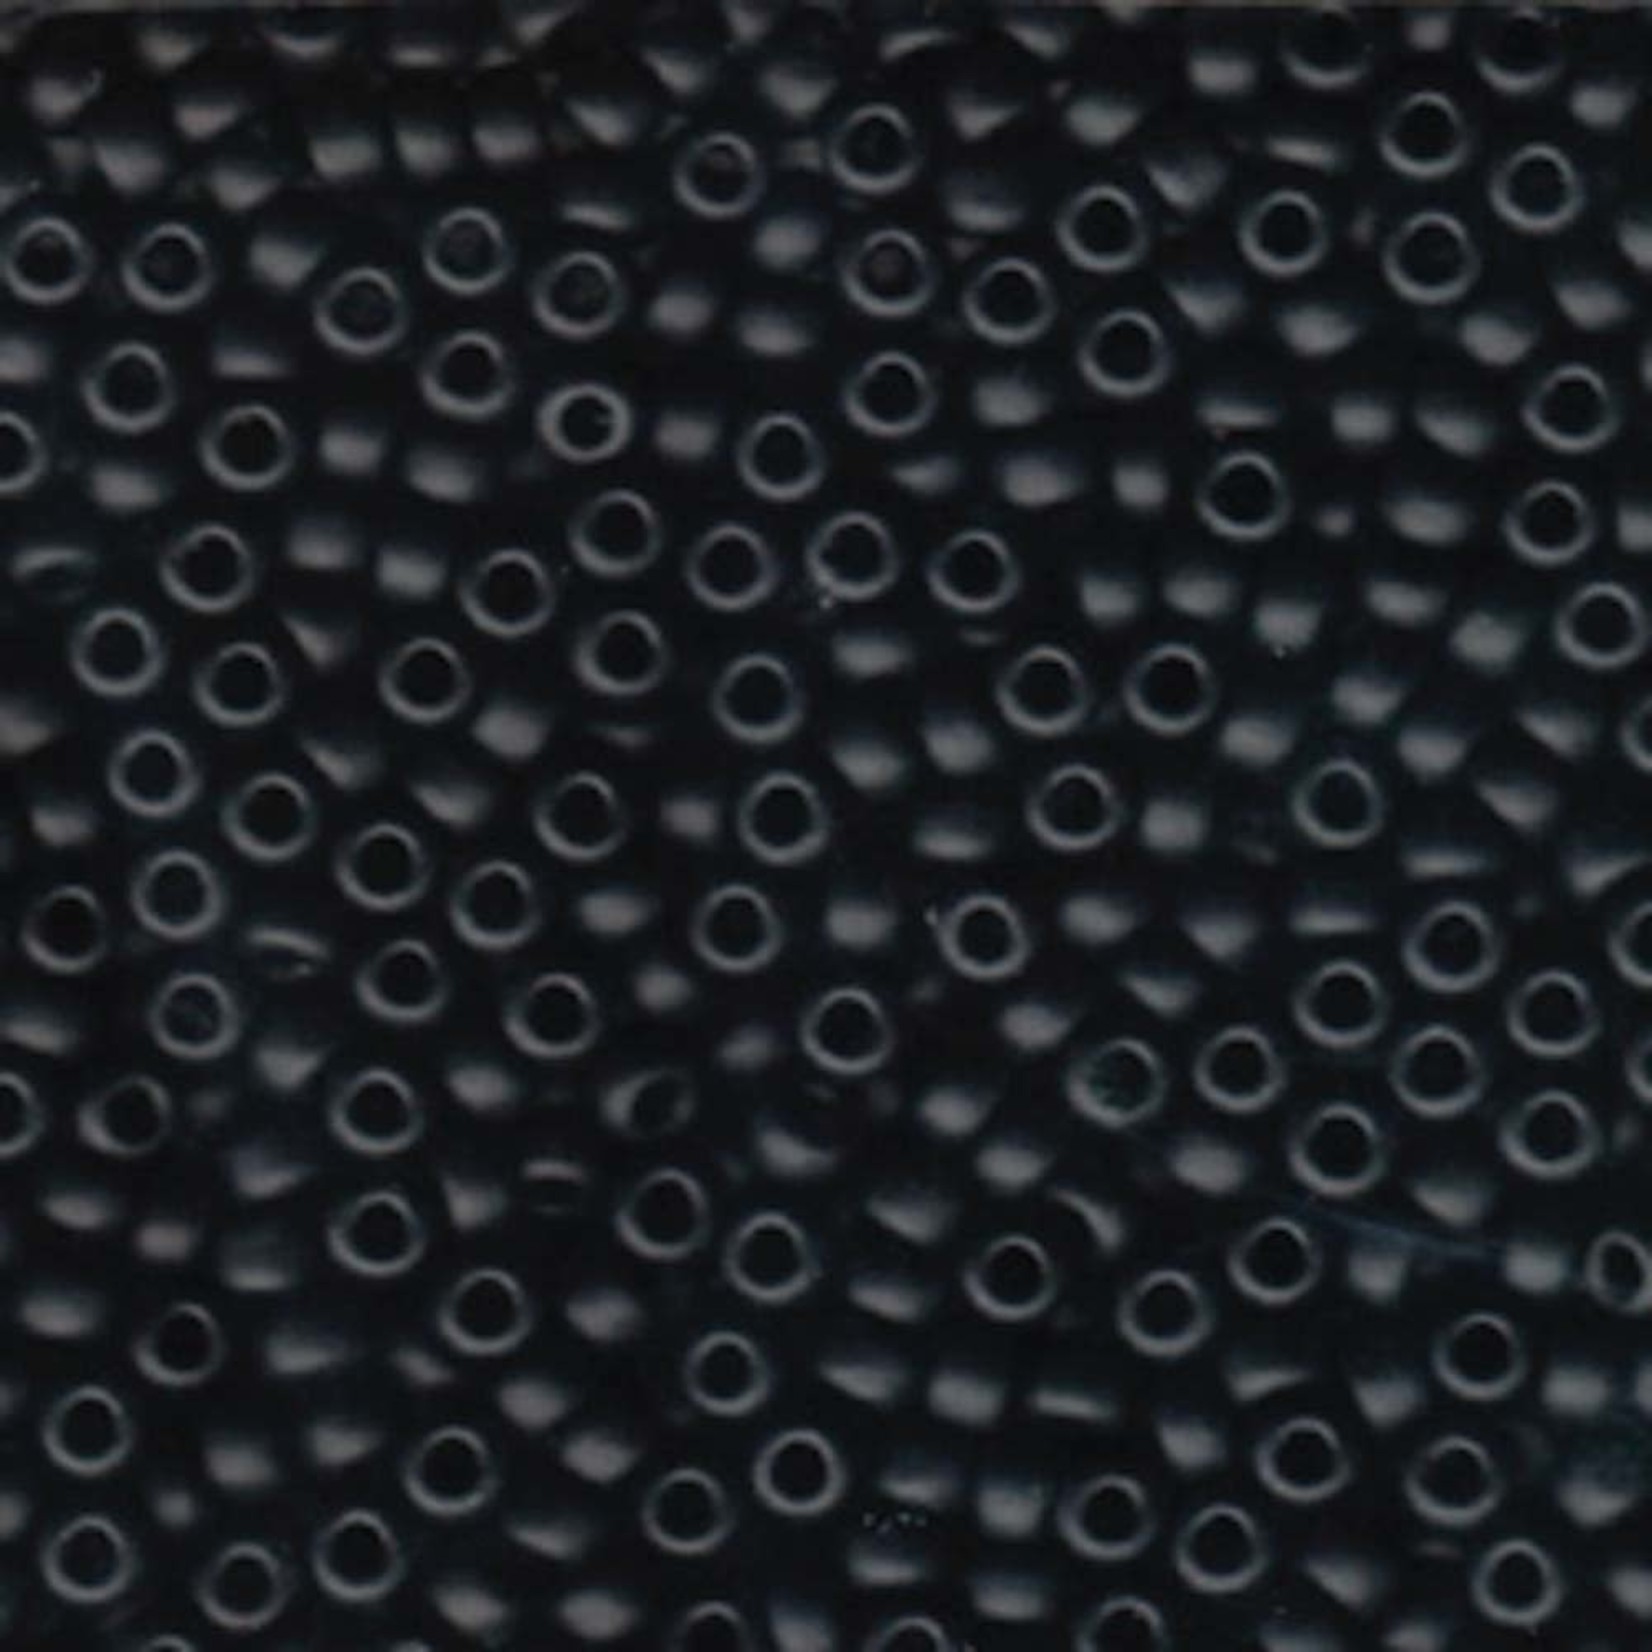 Miyuki Miyuki 6/0 Matte Black Seed Beads